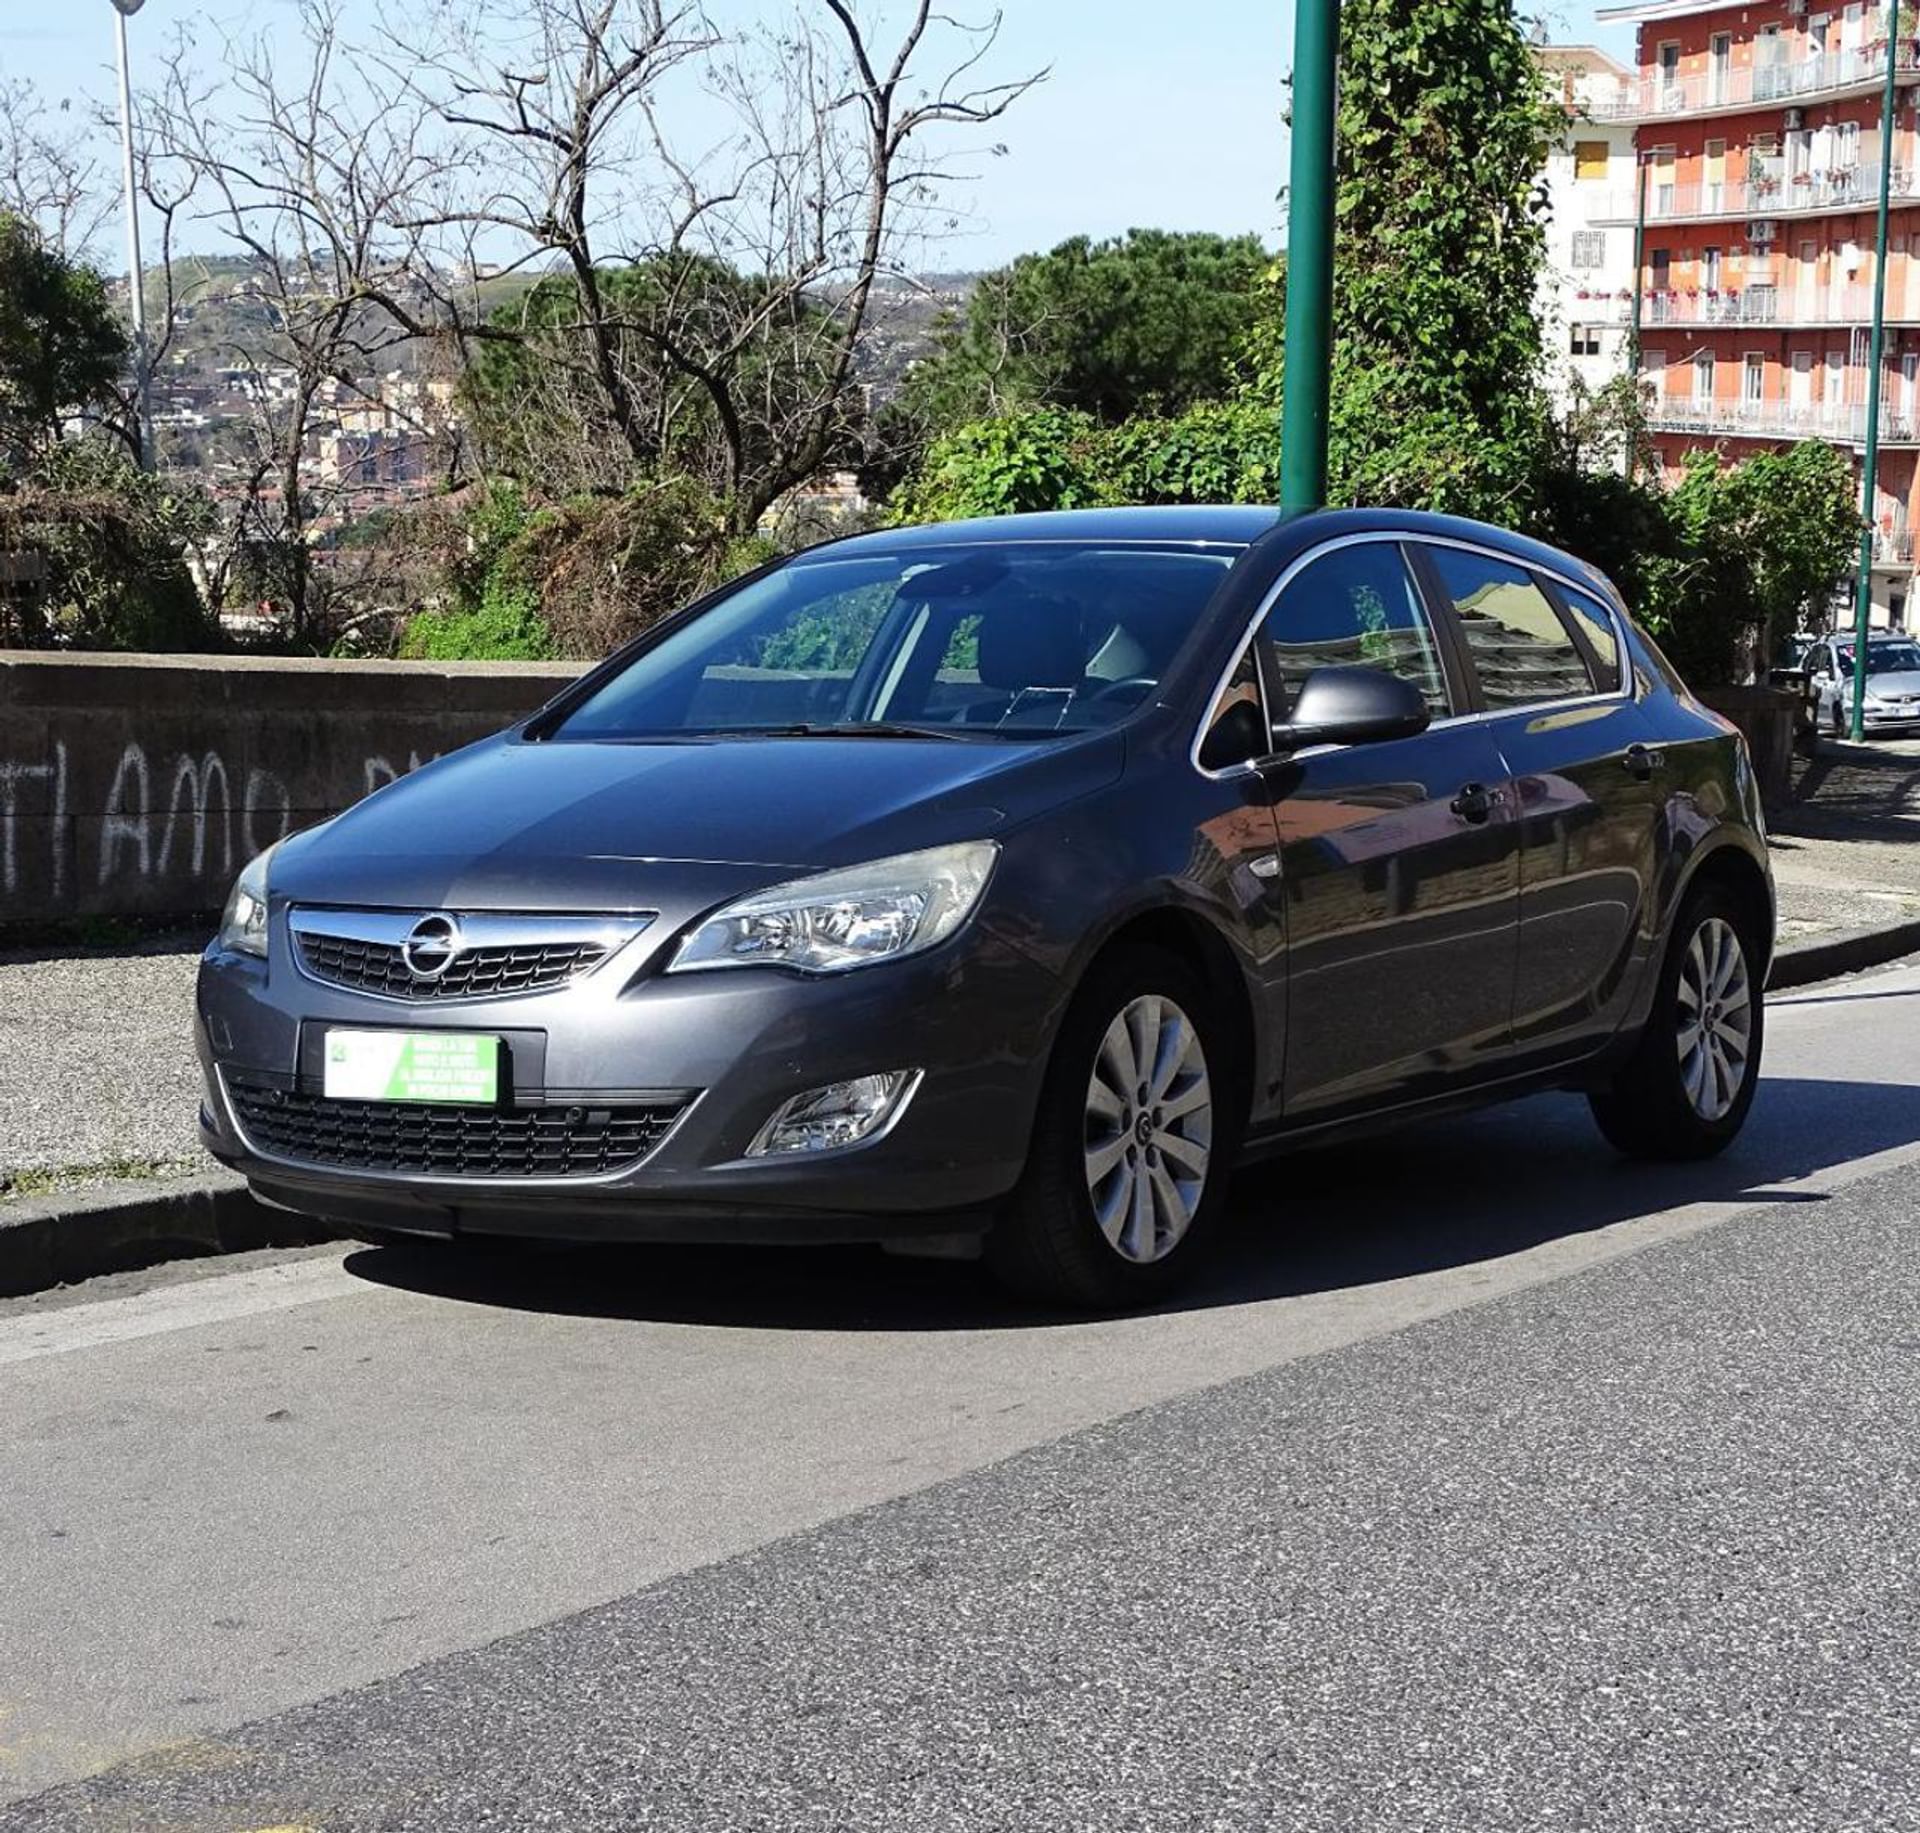 Opel Astra 1.7 CDTI 110CV